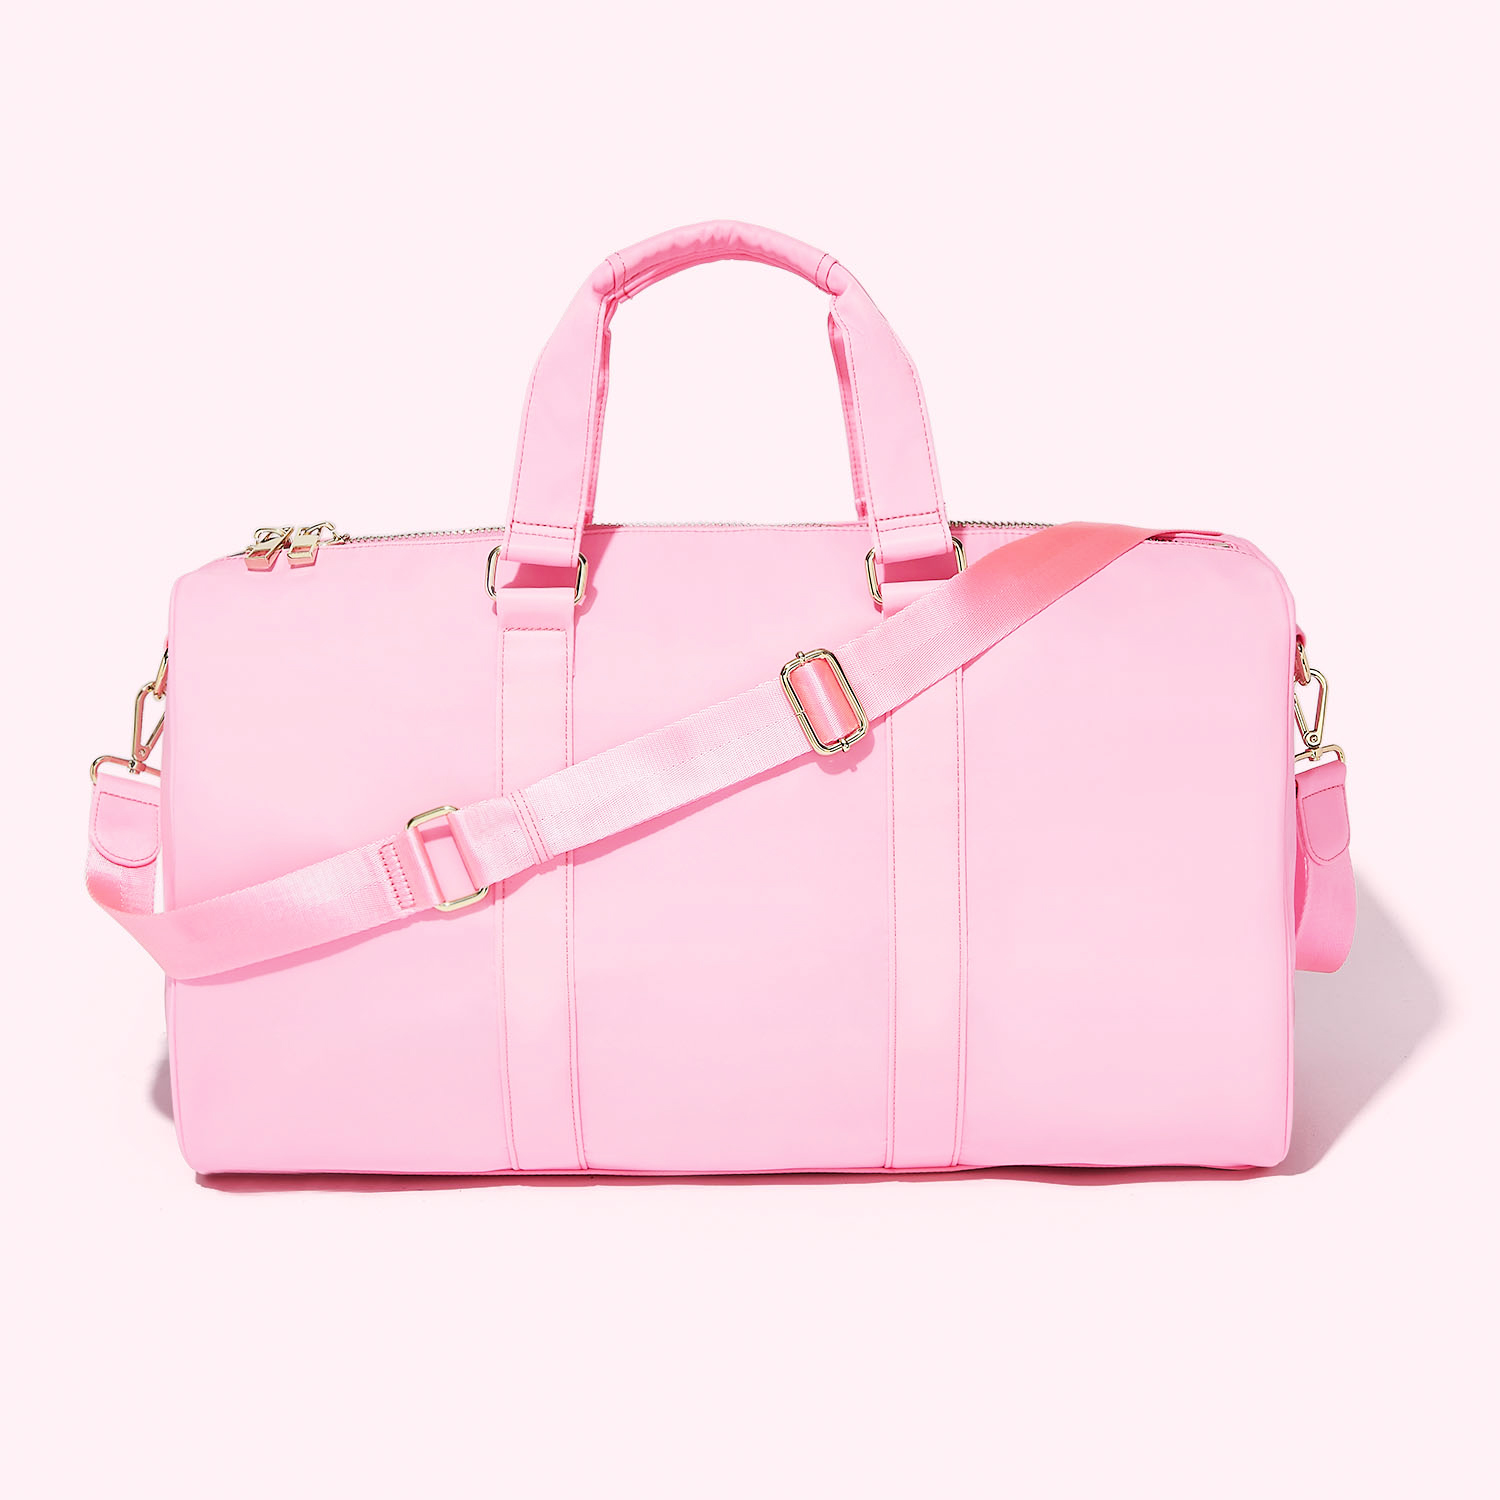 Matein Women's Weekender Duffel Bags Pink